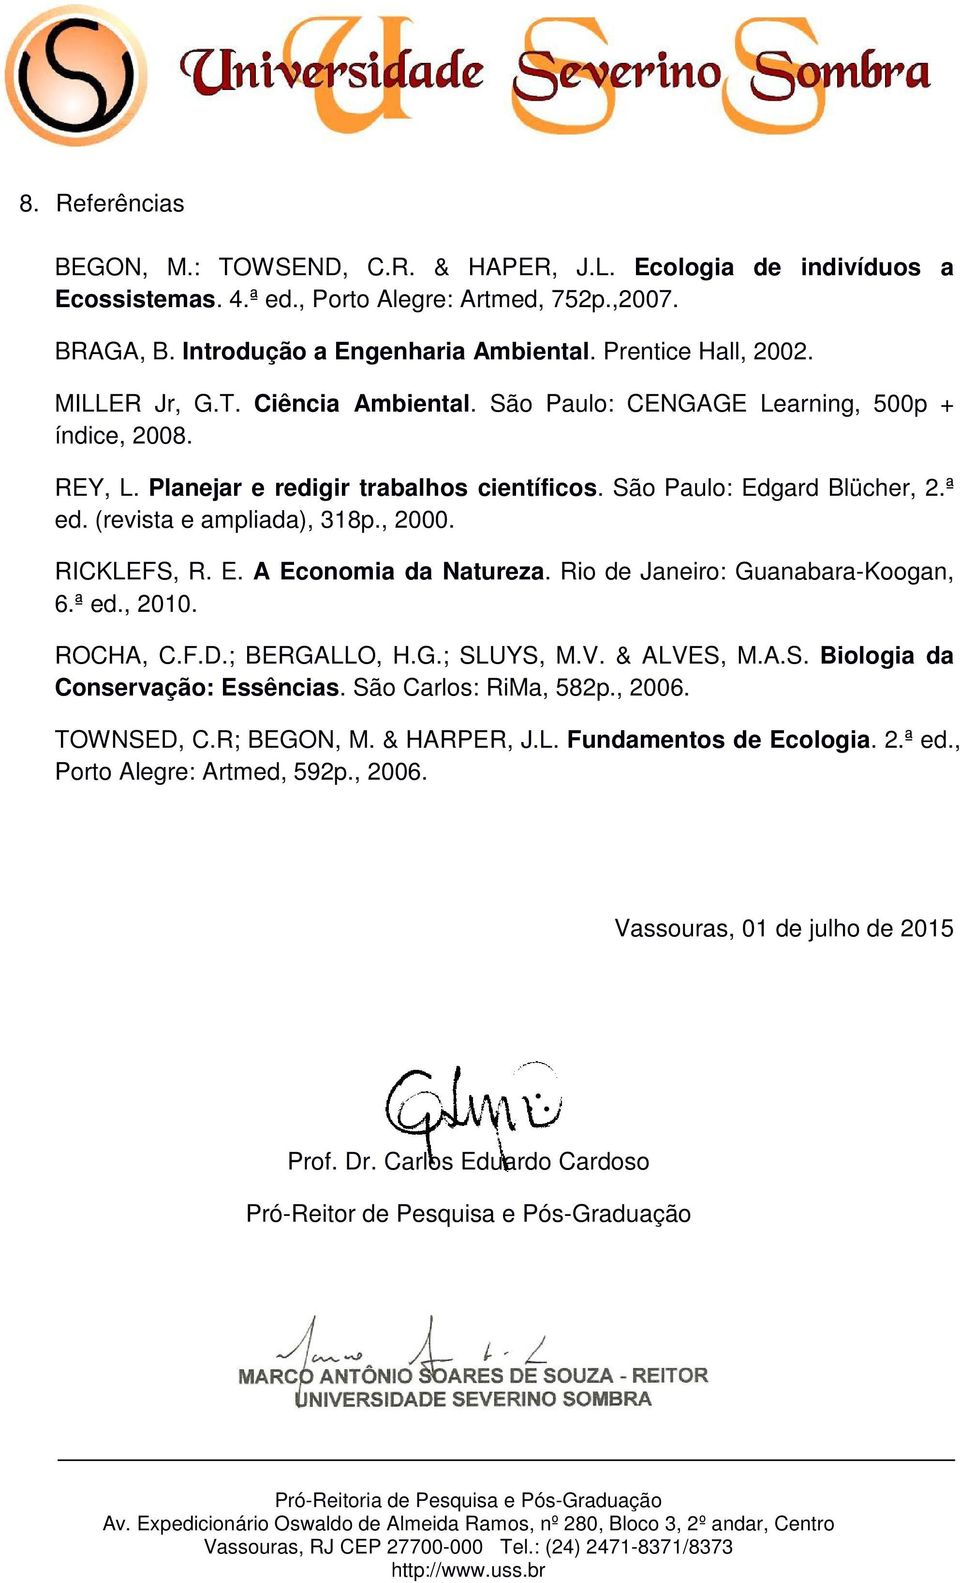 (revista e ampliada), 318p., 2000. RICKLEFS, R. E. A Economia da Natureza. Rio de Janeiro: Guanabara-Koogan, 6.ª ed., 2010. ROCHA, C.F.D.; BERGALLO, H.G.; SLUYS, M.V. & ALVES, M.A.S. Biologia da Conservação: Essências.